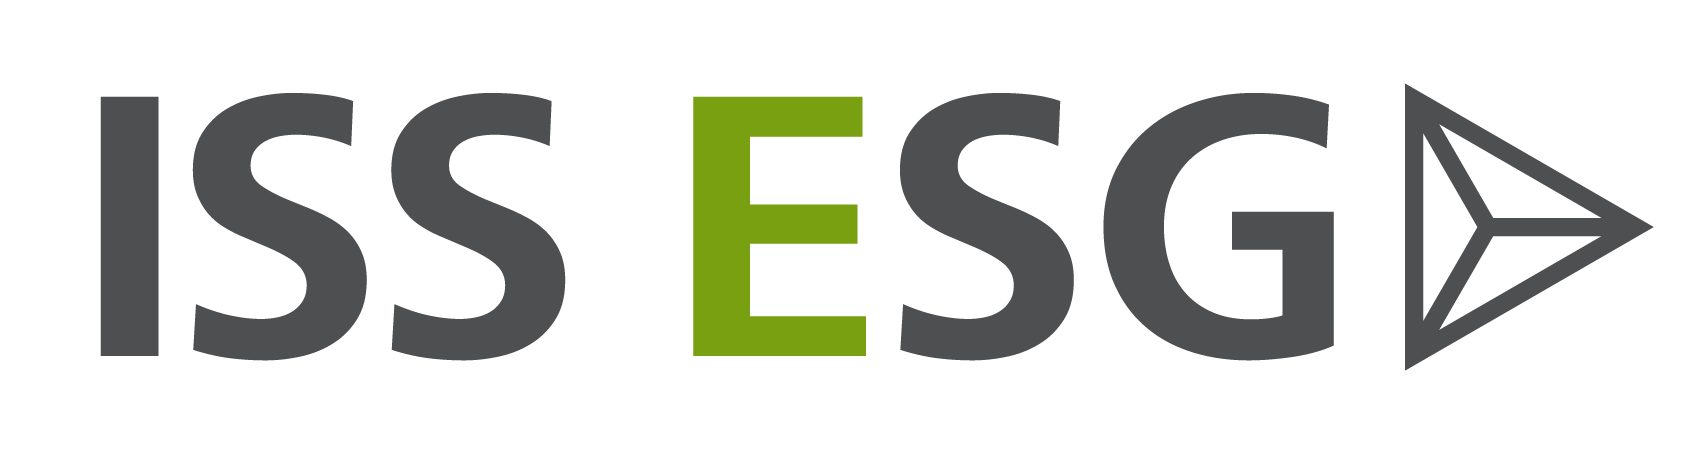 ISS ESG logo